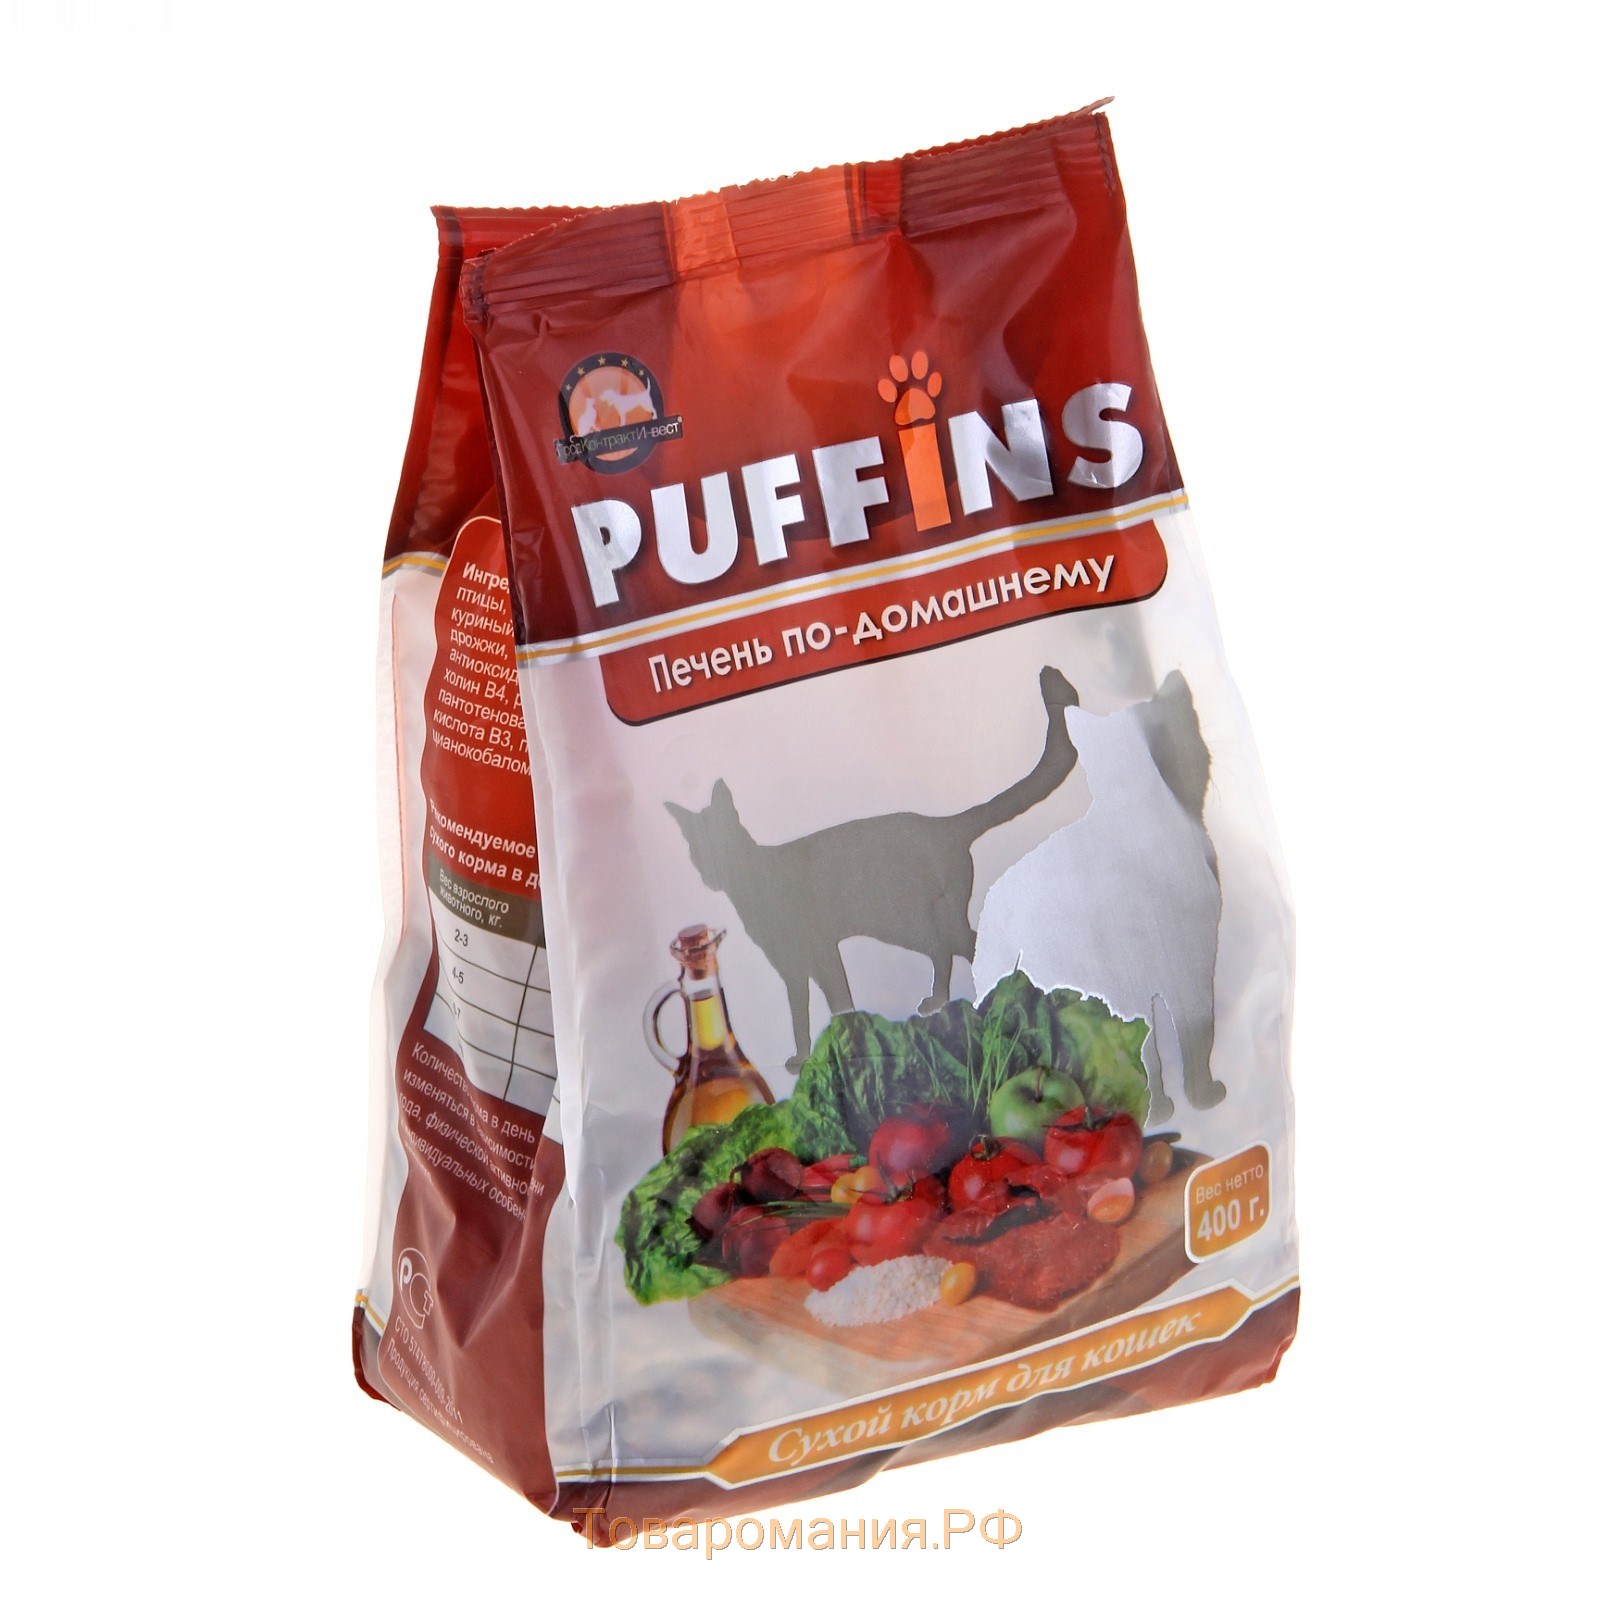 Puffins корм для кошек